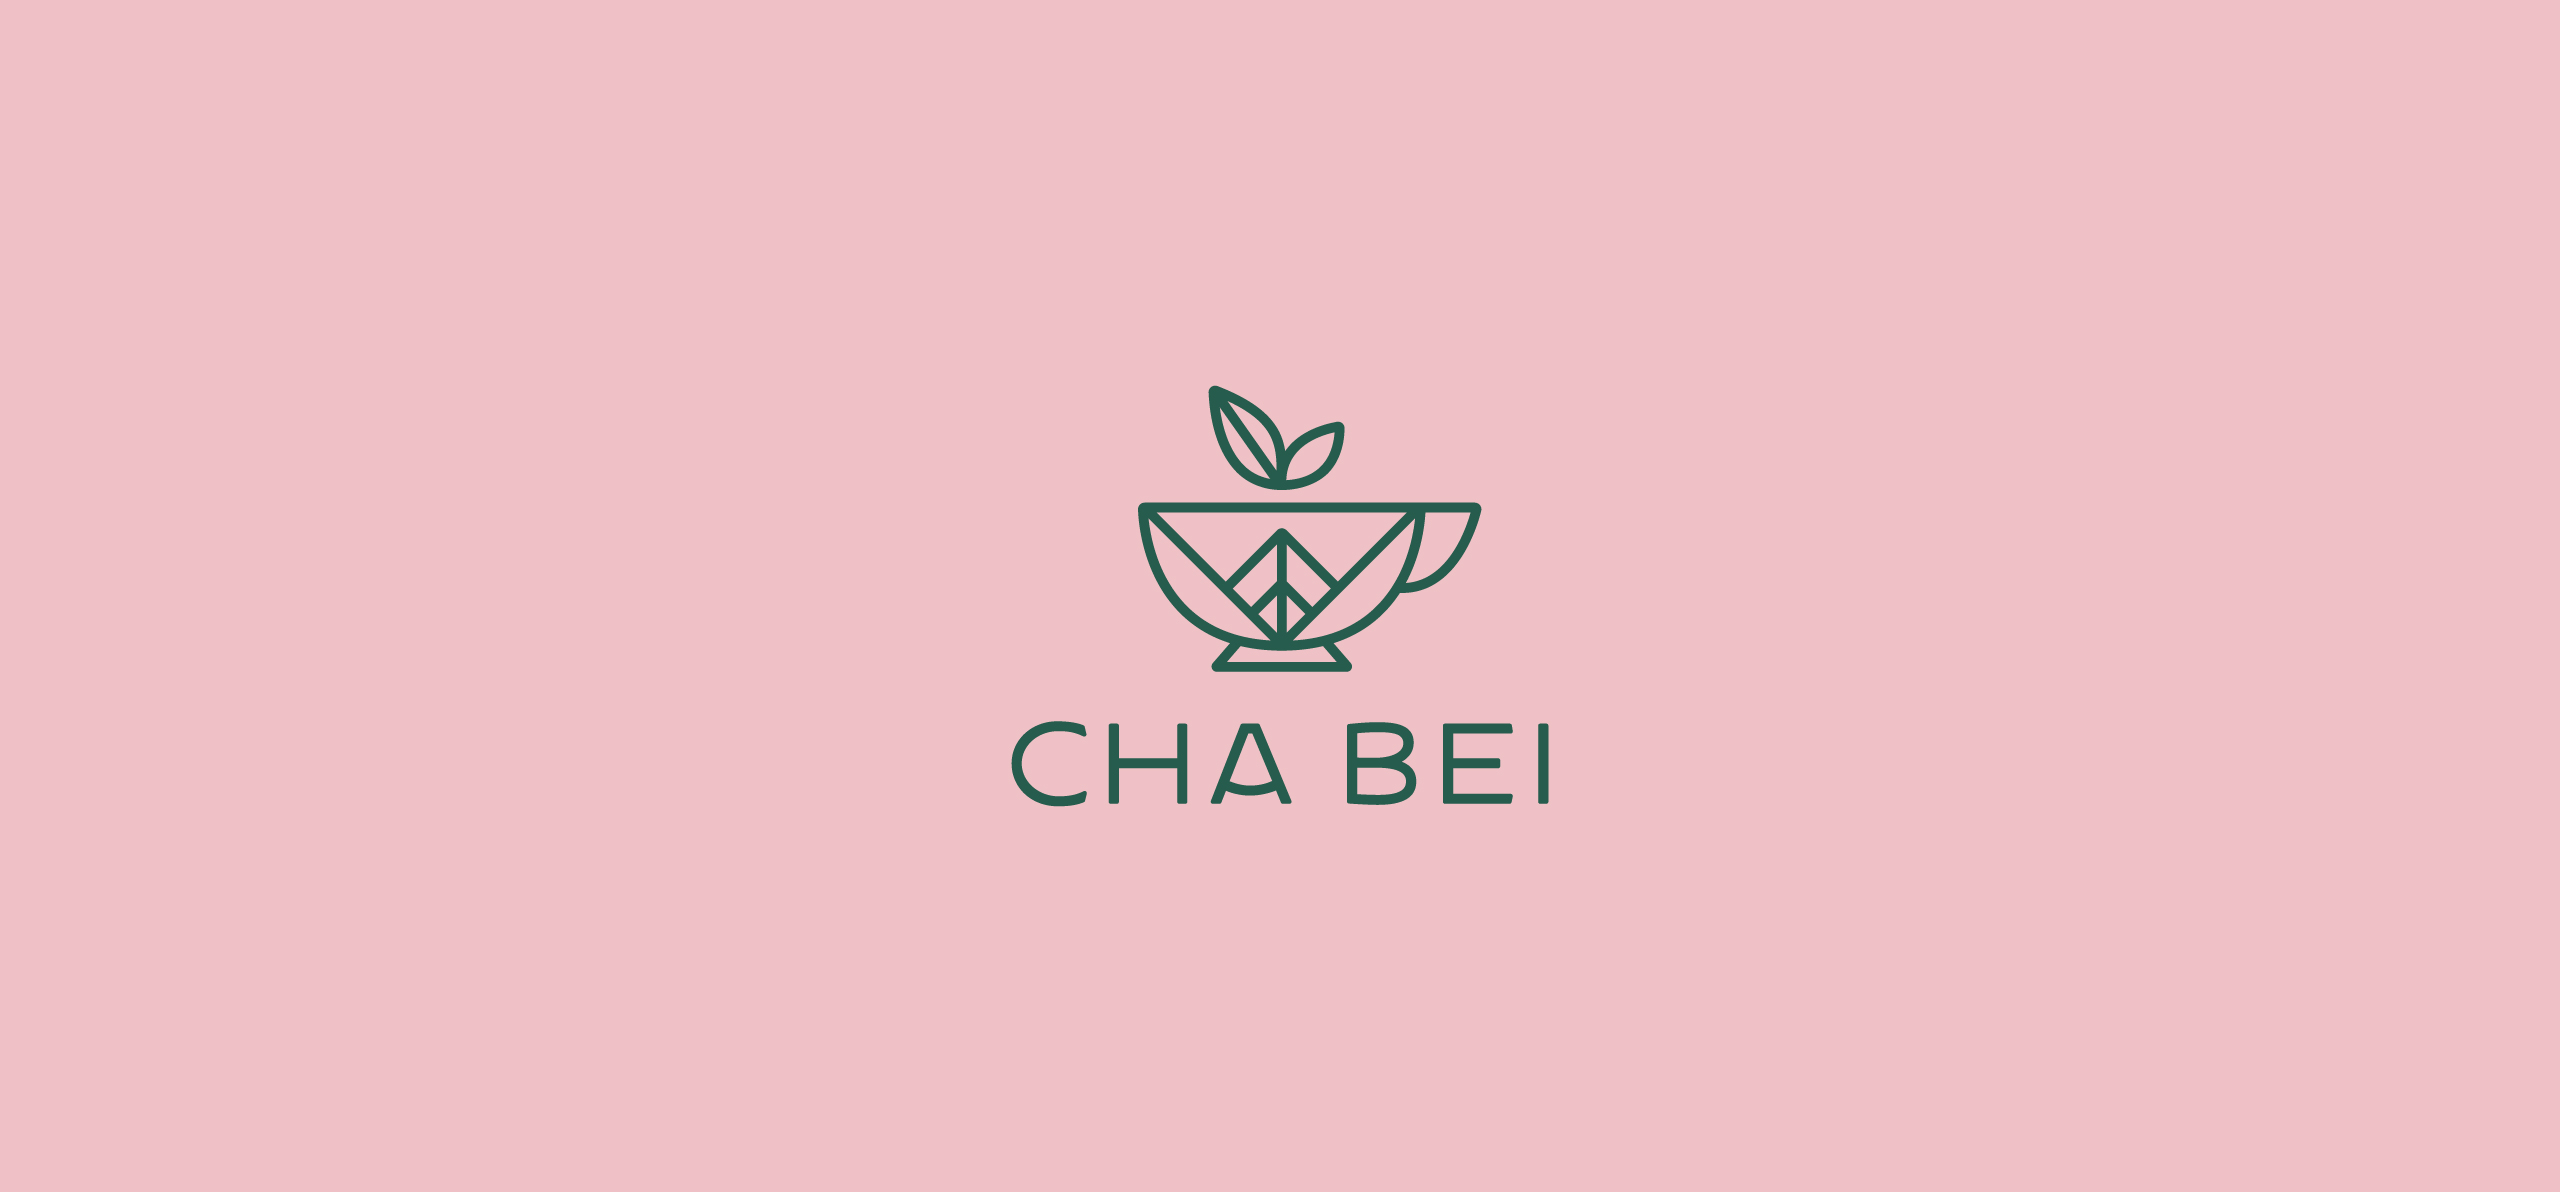 RBS_Cha_Bei_Logo_01